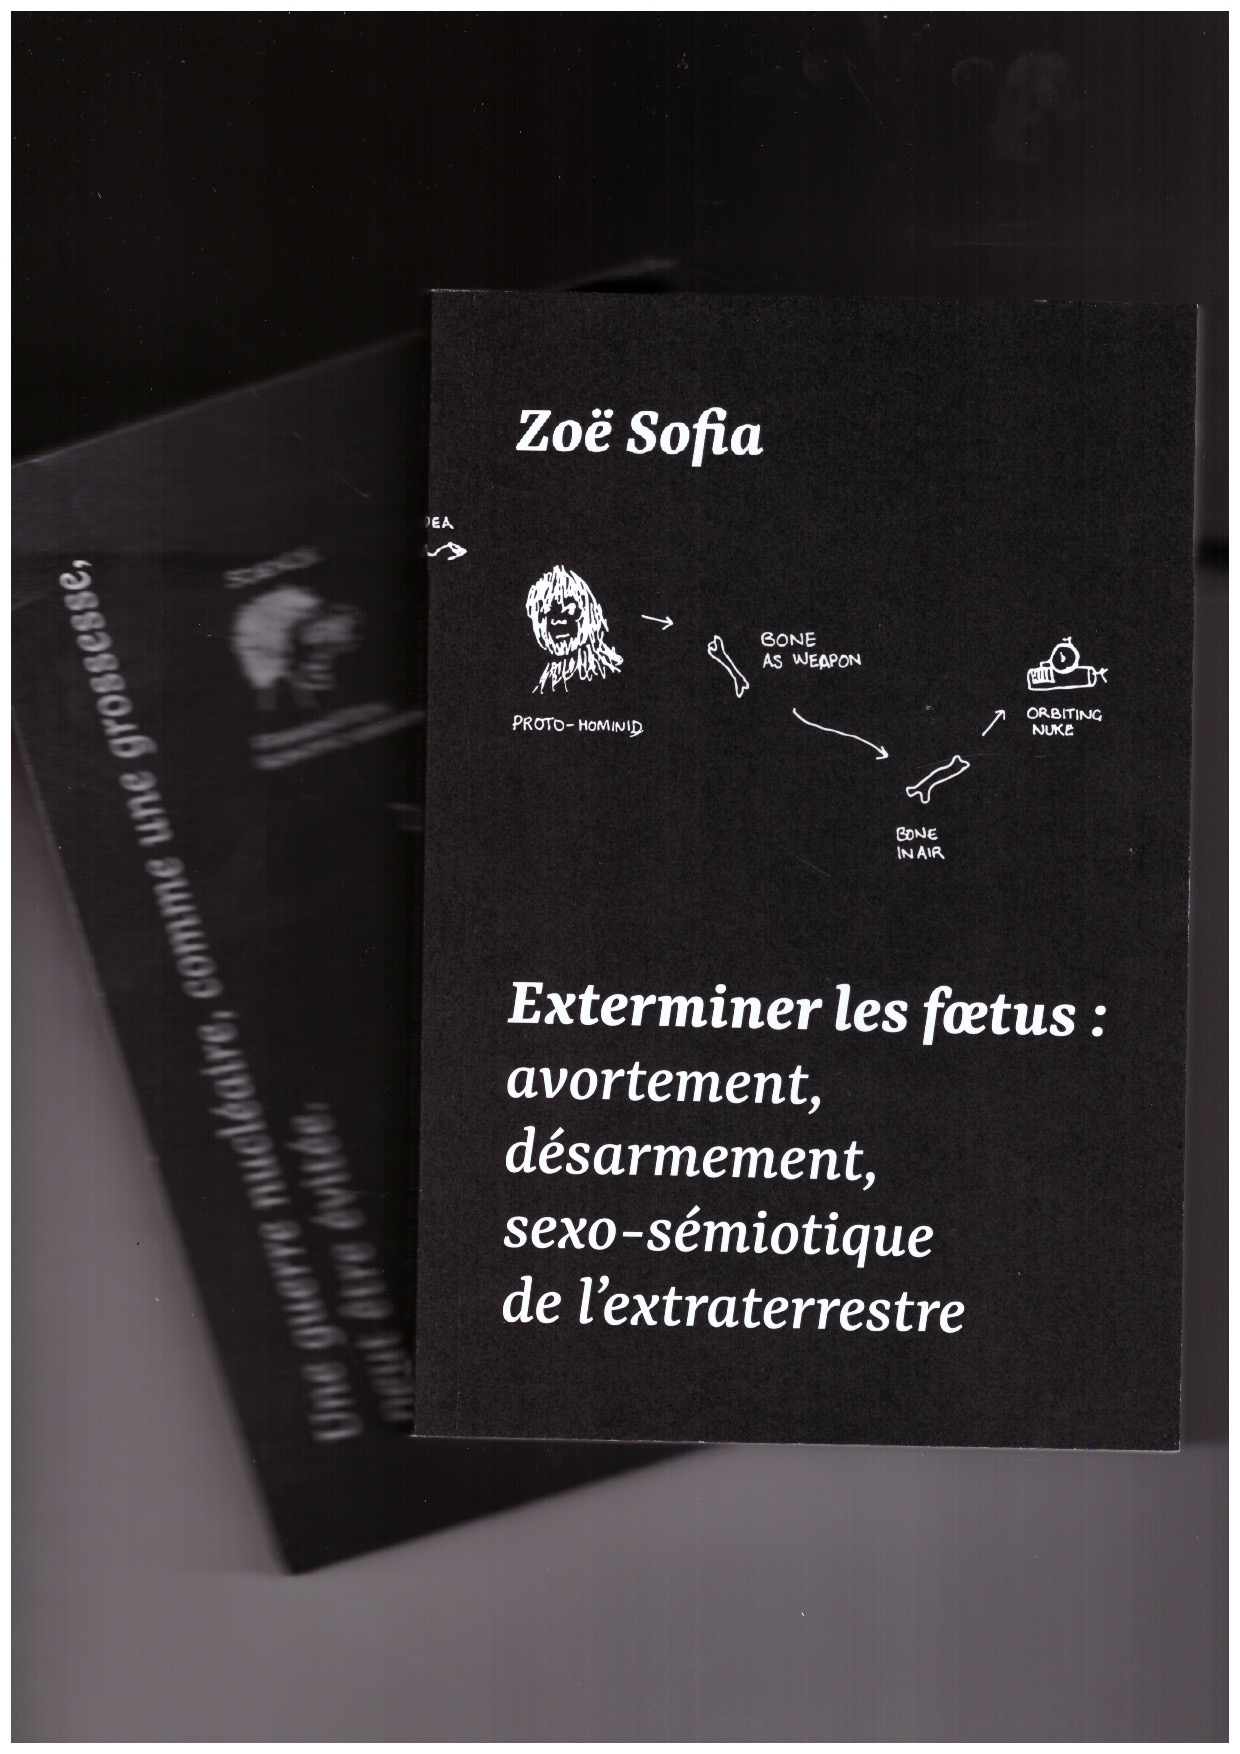 SOFIA, Zoë - Exterminer les foetus: avortement, désarmement, sexo-sémiotique de l'extraterrestre